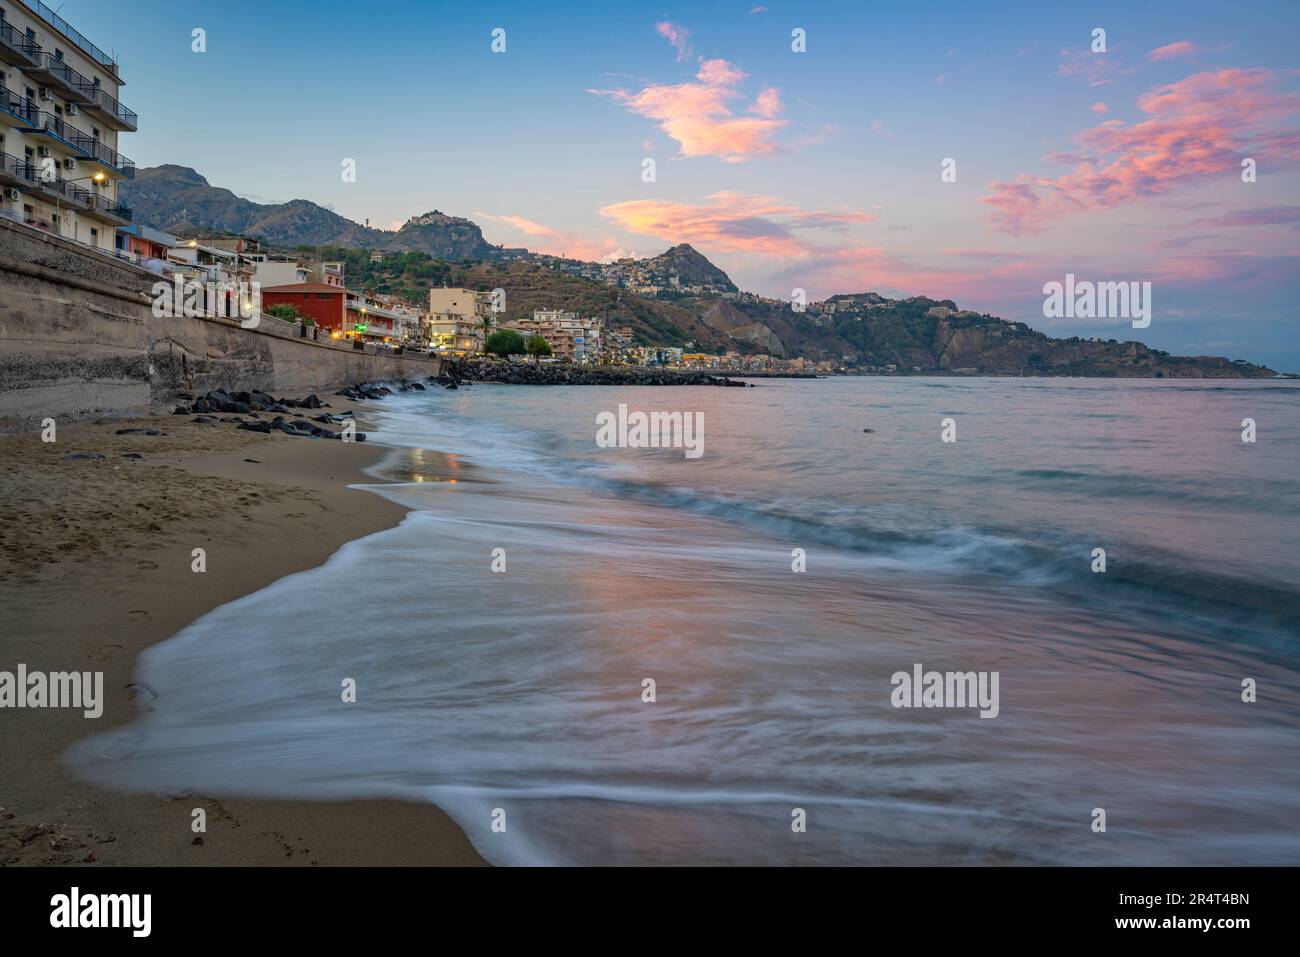 Vue sur la plage de Giardini-Naxos et la baie de Giardini-Naxos au coucher du soleil, province de Messine, Sicile, Italie, Méditerranée, Europe Banque D'Images